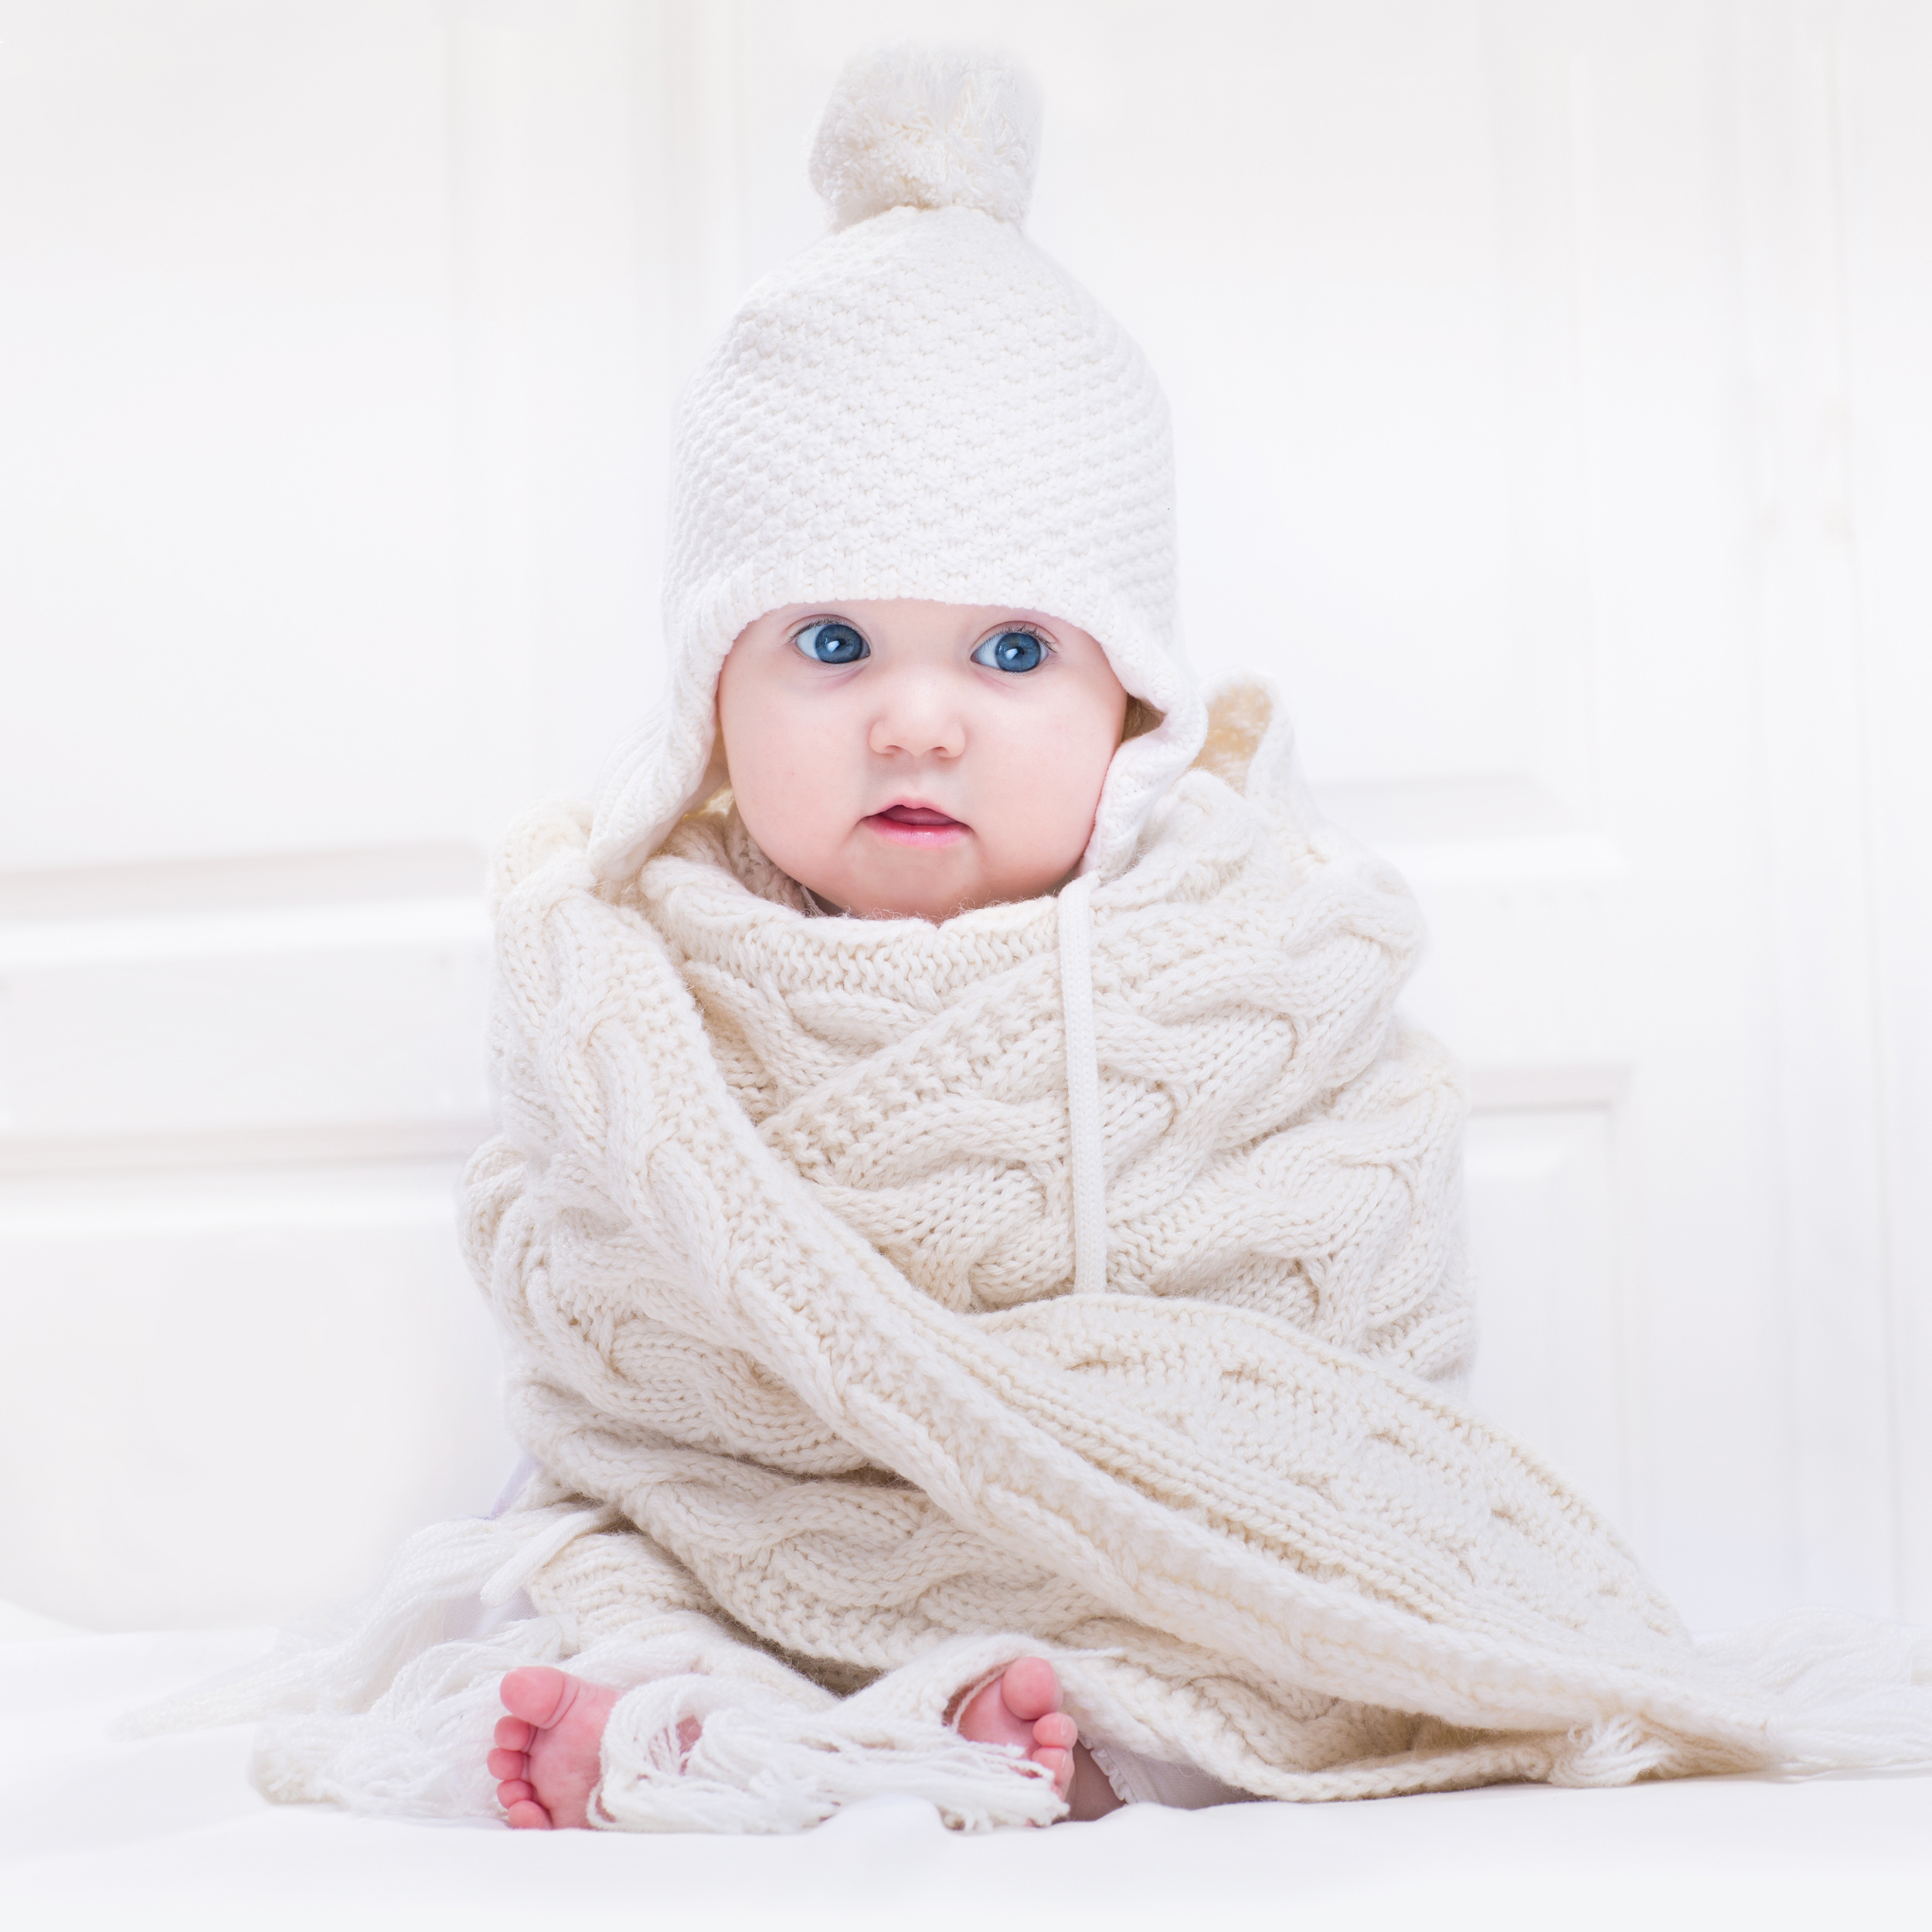 Comment protéger la peau fragile de bébé l’hiver?